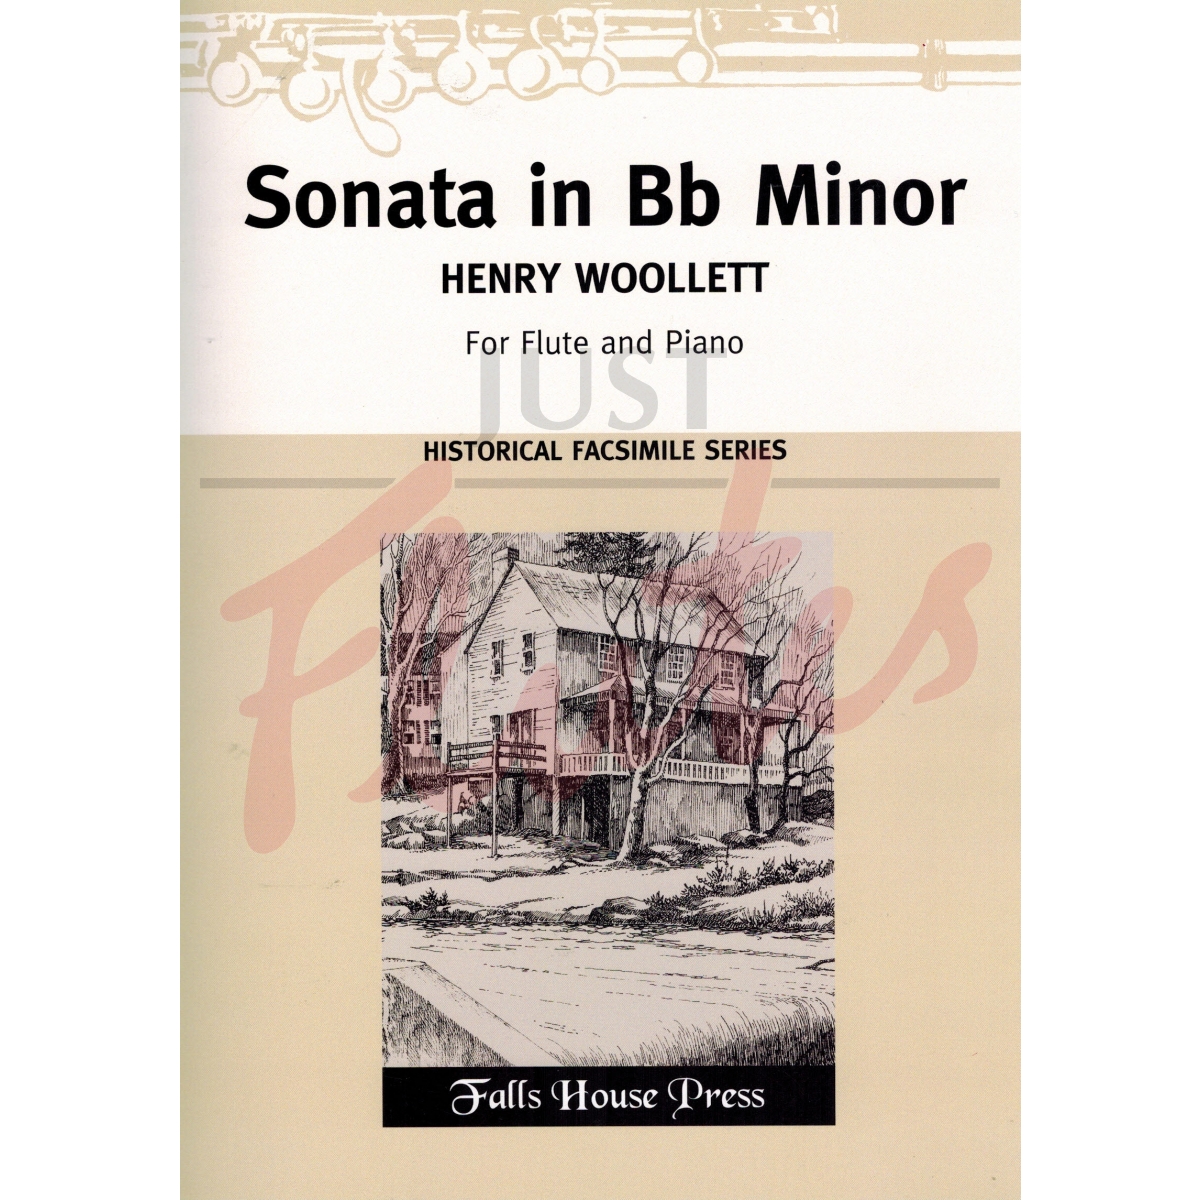 Sonata in Bb minor for Flute and Piano